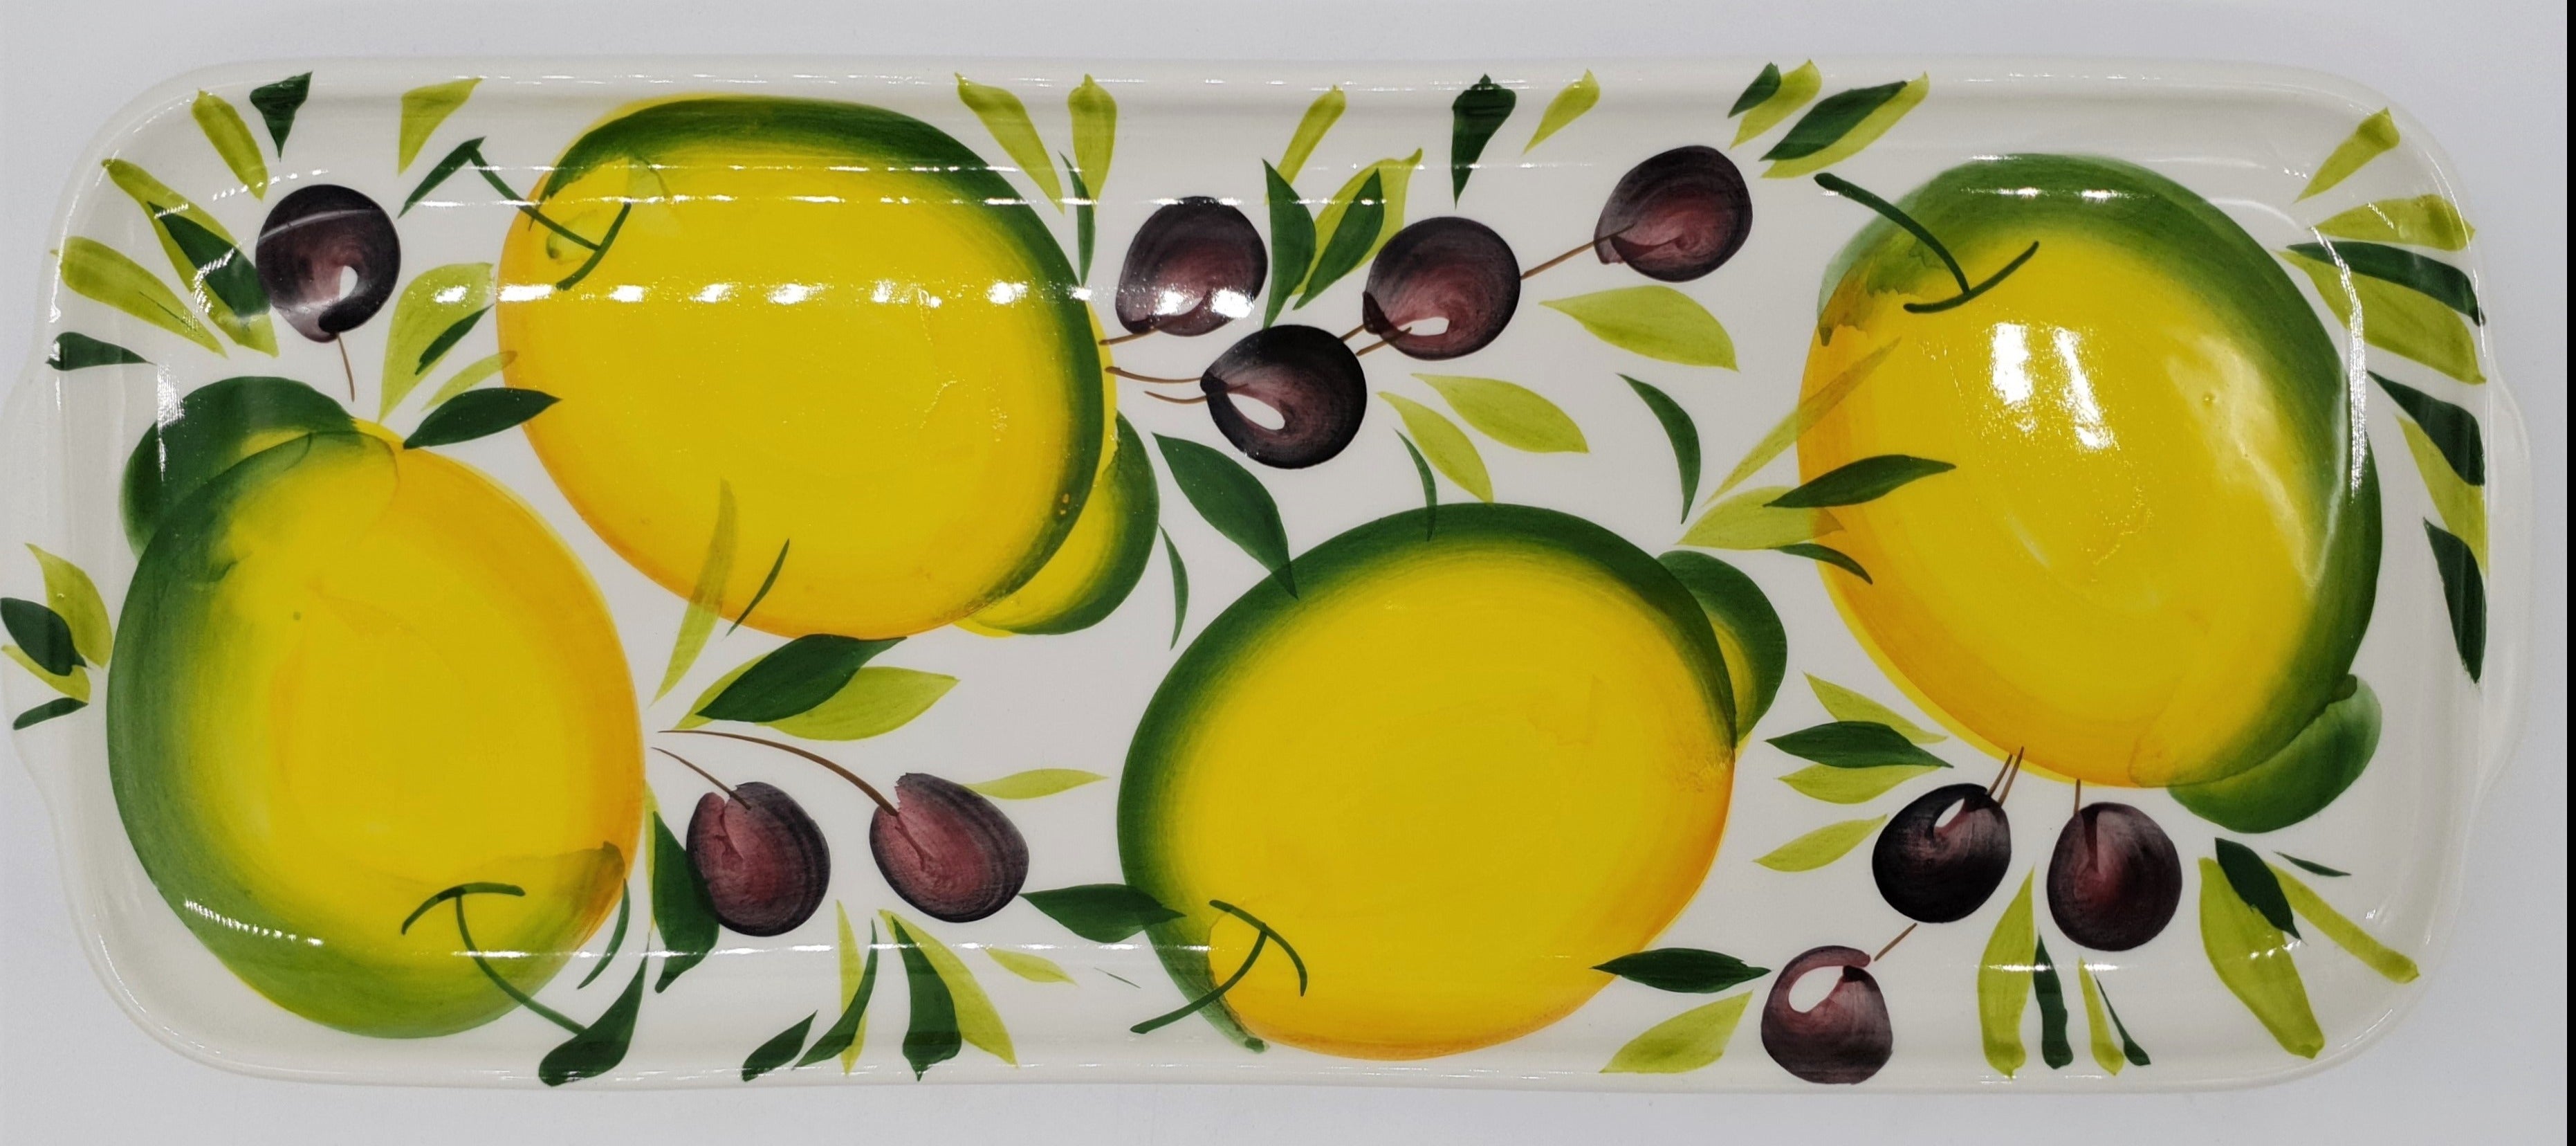 Vassoio Con Manici Decoro Limoni E Olive